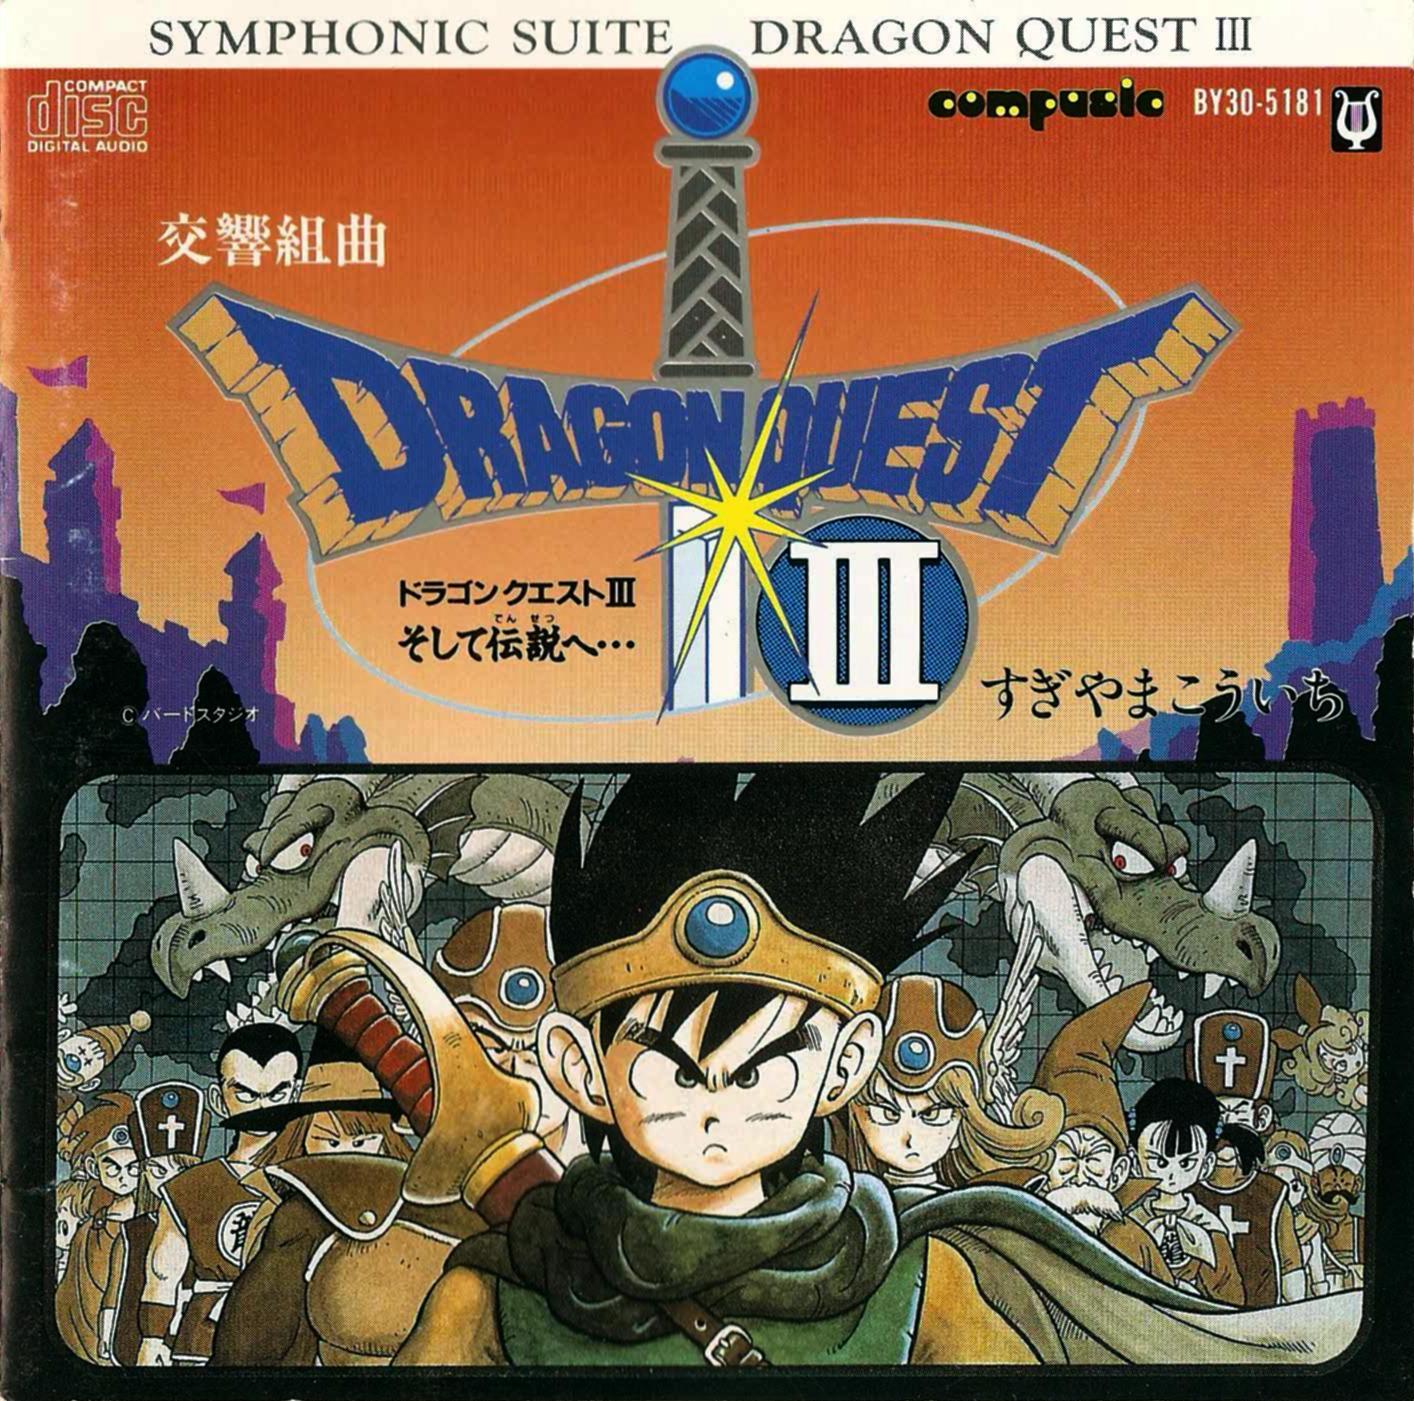 adventure-dragon-quest-3-sheet-music-ulucha-powiesc